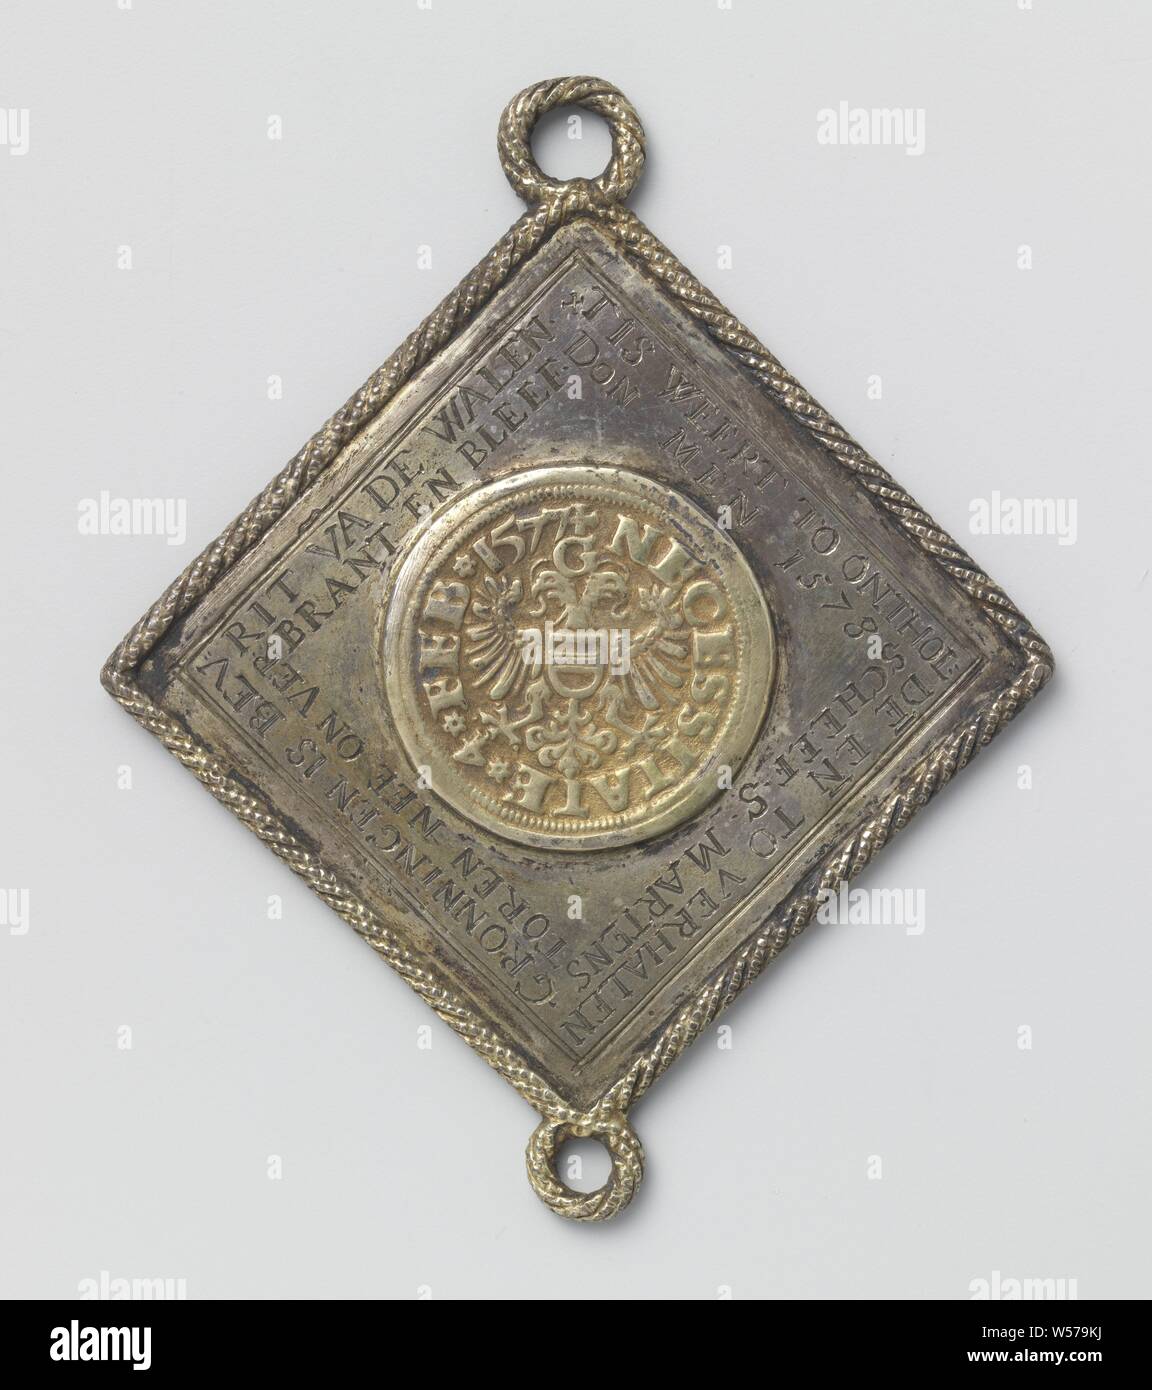 Siège de Groningue, médaille de l'histoire faite d'un thaler, royal coupe  ronde et dorée, monnaie d'urgence situé sur une plaque en forme de losange  monté dans un câble frontière avec un oeil